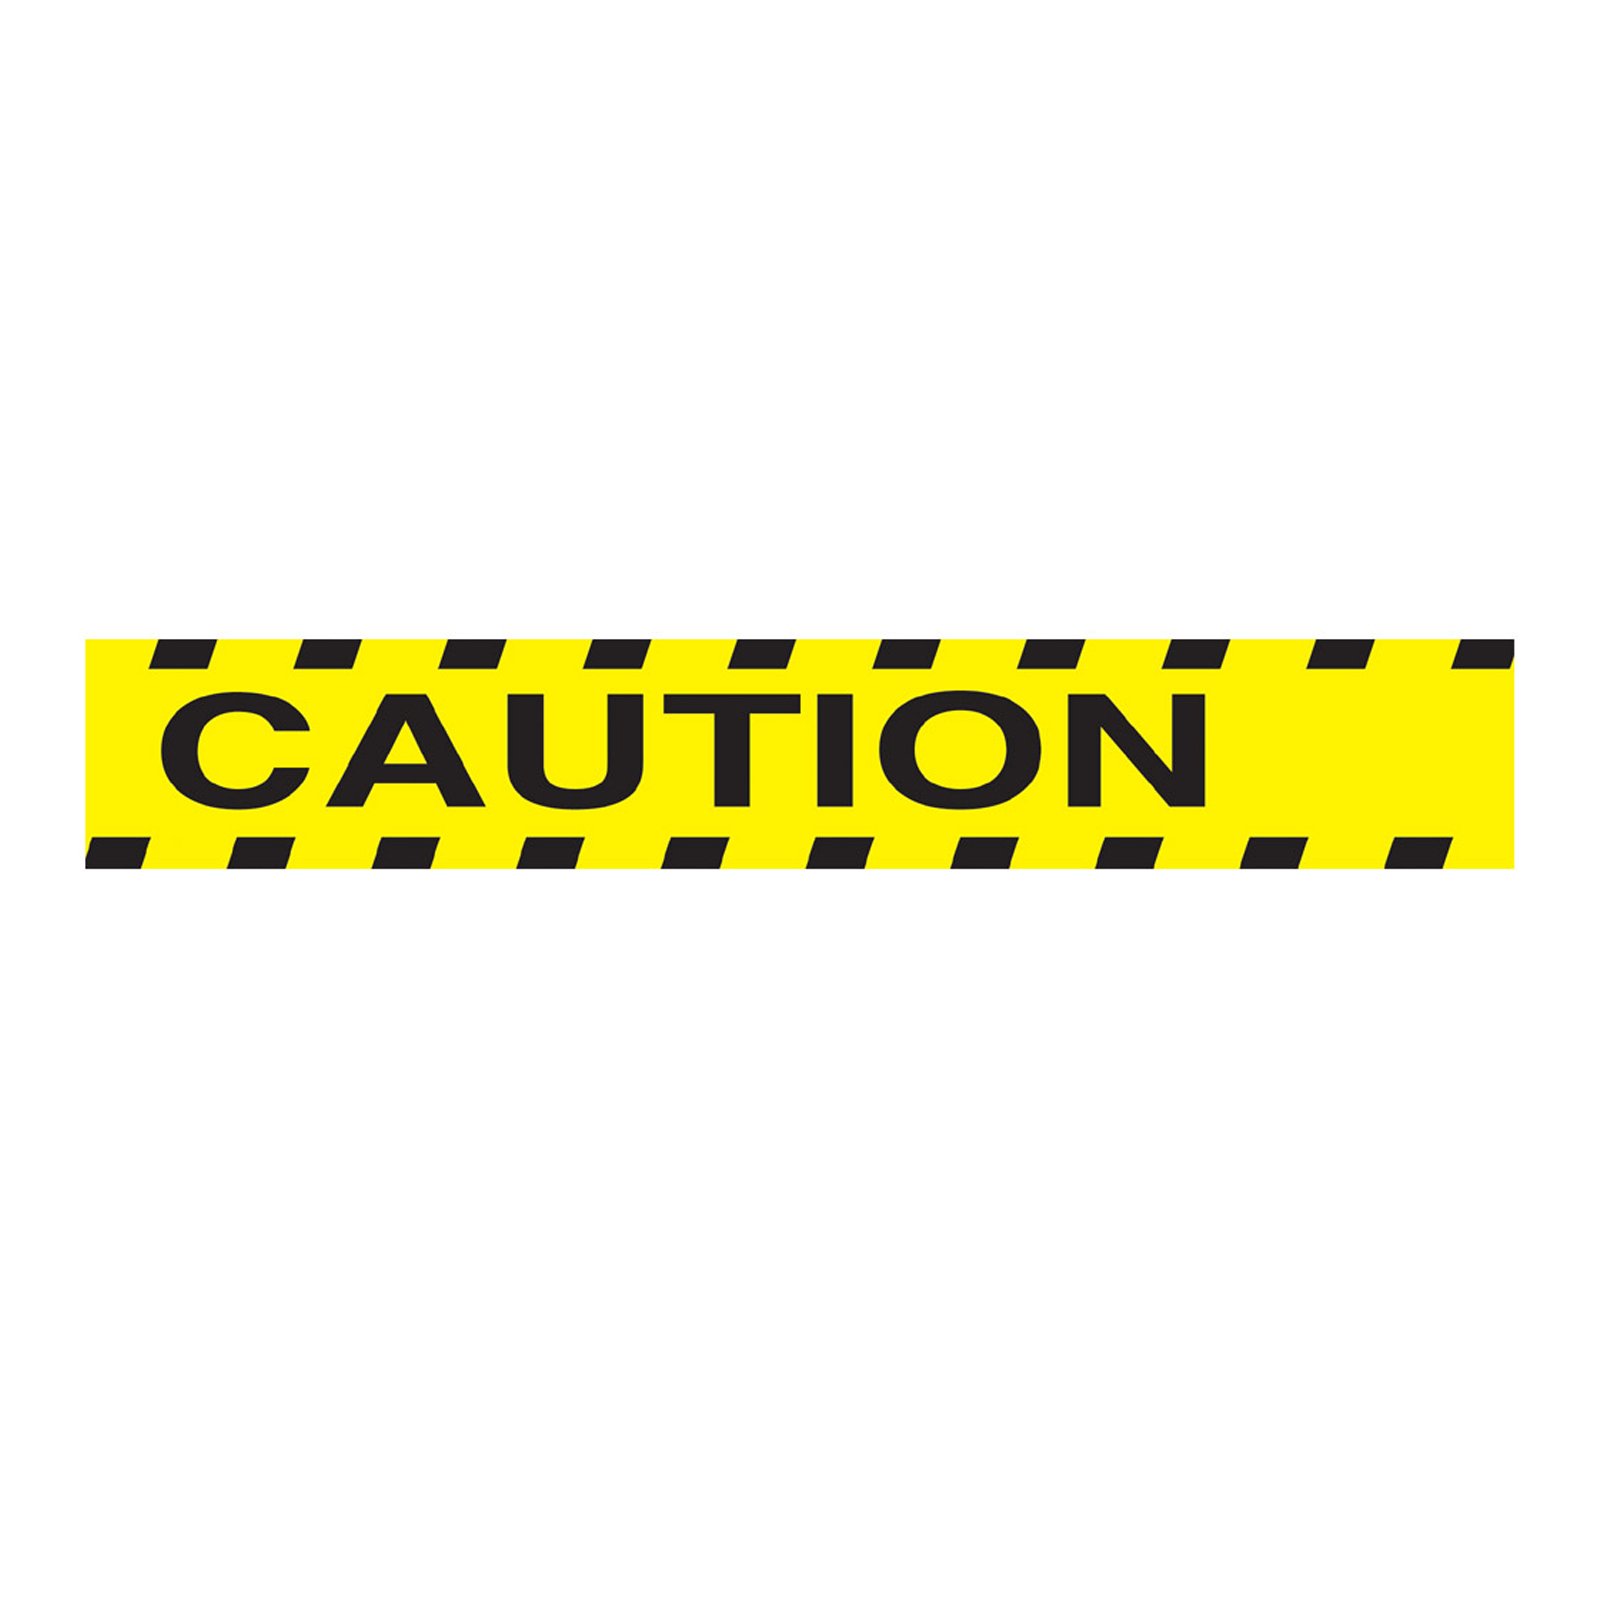 Caution Tape Clipart 